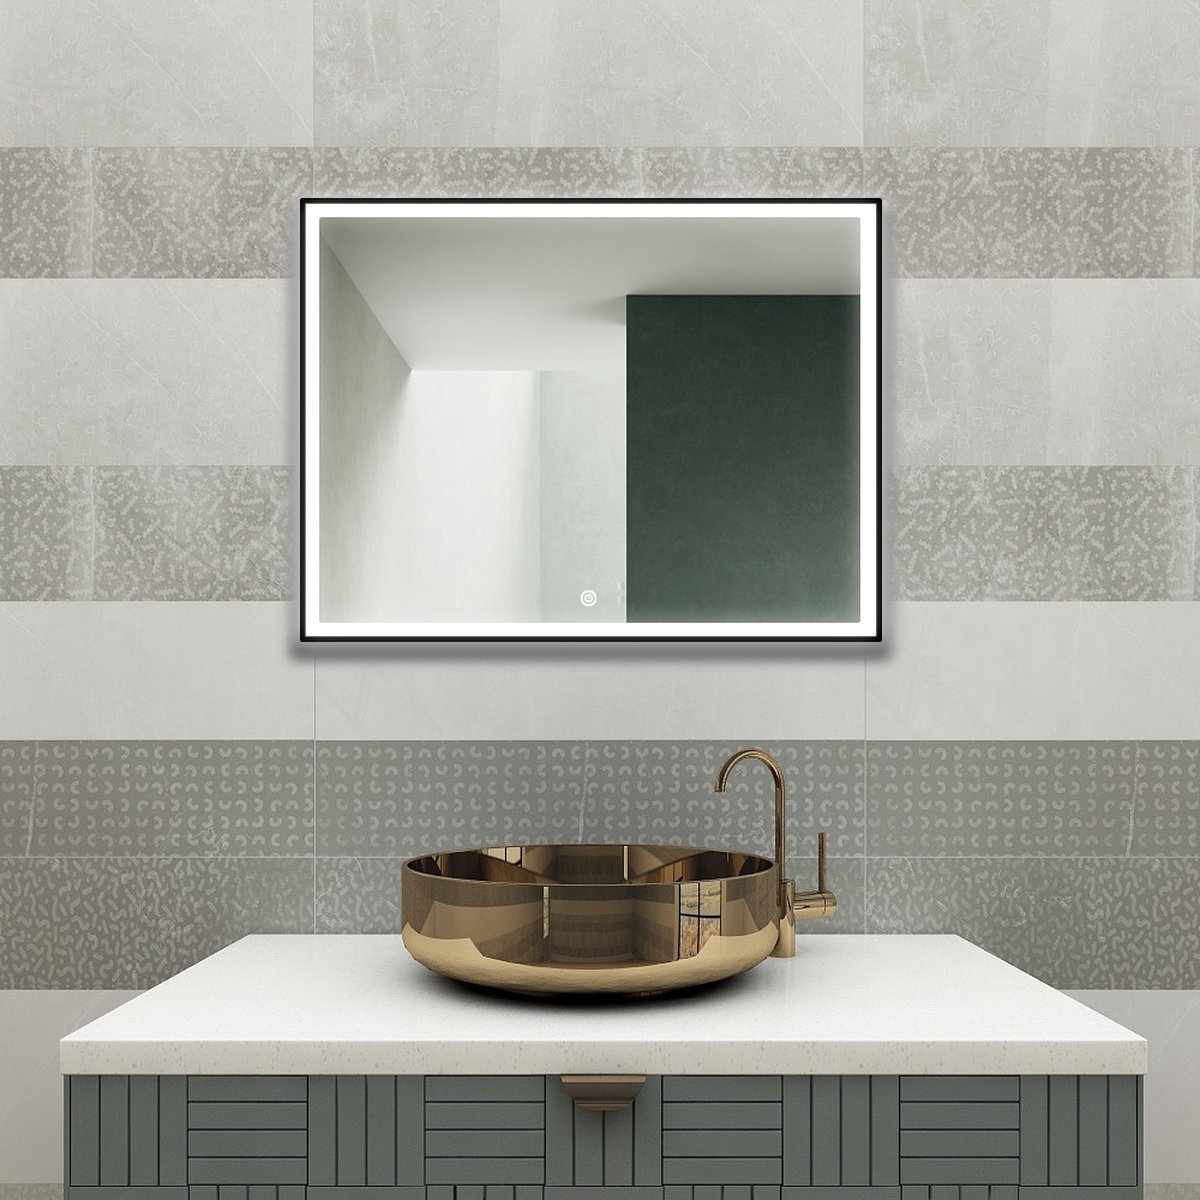 Badkamerspiegel - Spiegel met Verlichting - Spiegel - Wandspiegel - Spiegels - LED - Anti-condens - 100 cm breed